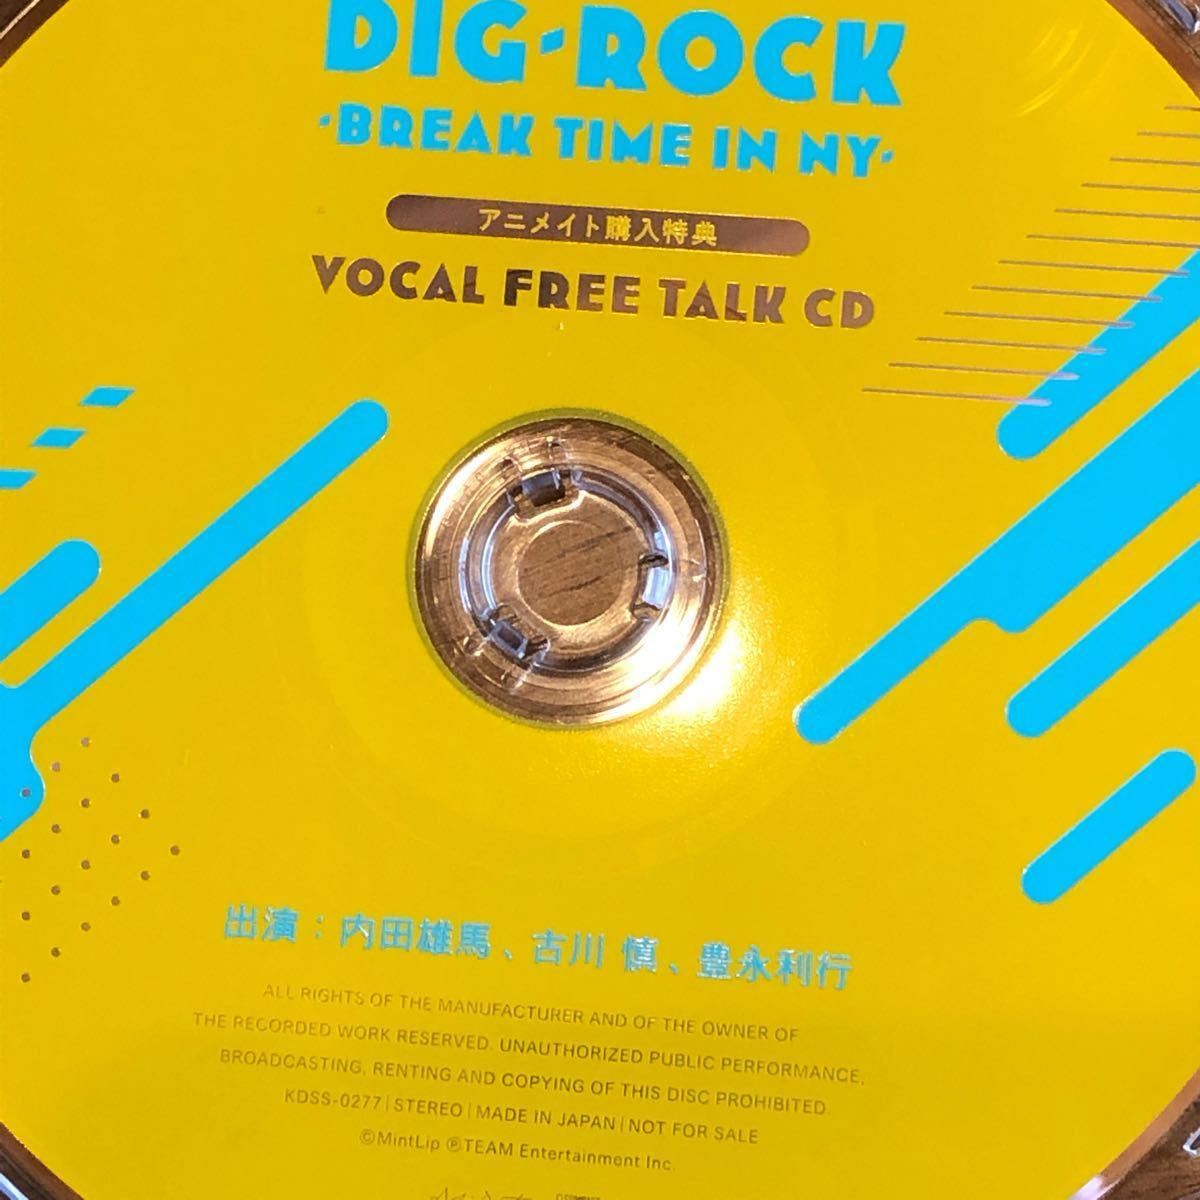 DIG-ROCK BREAK TIME IN NY 限定盤